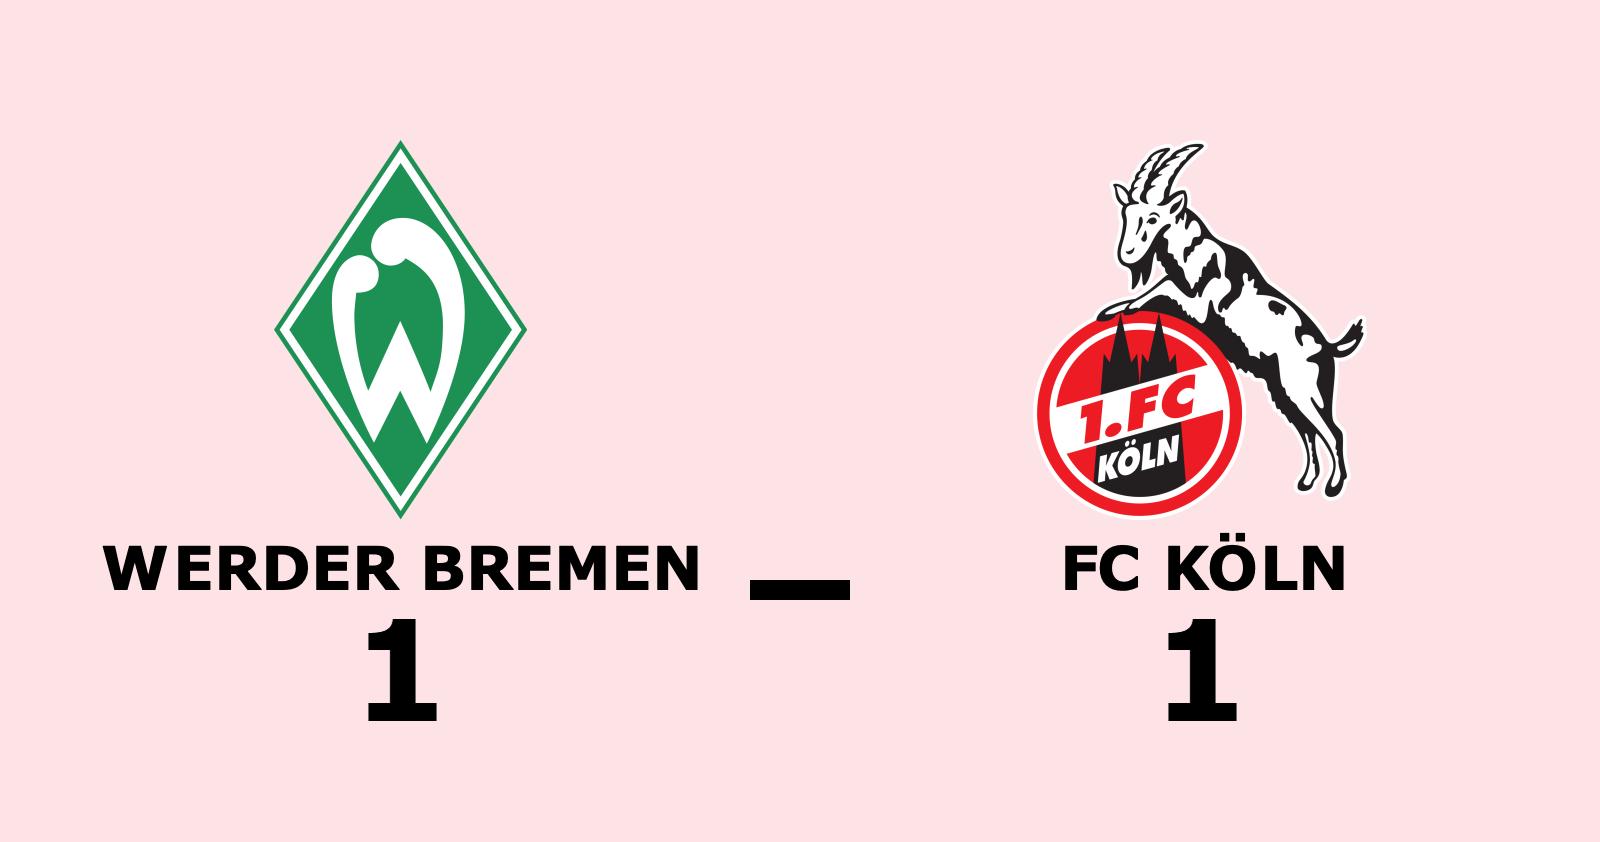 Fortsatt tungt för FC Köln - oavgjort mot Werder Bremen